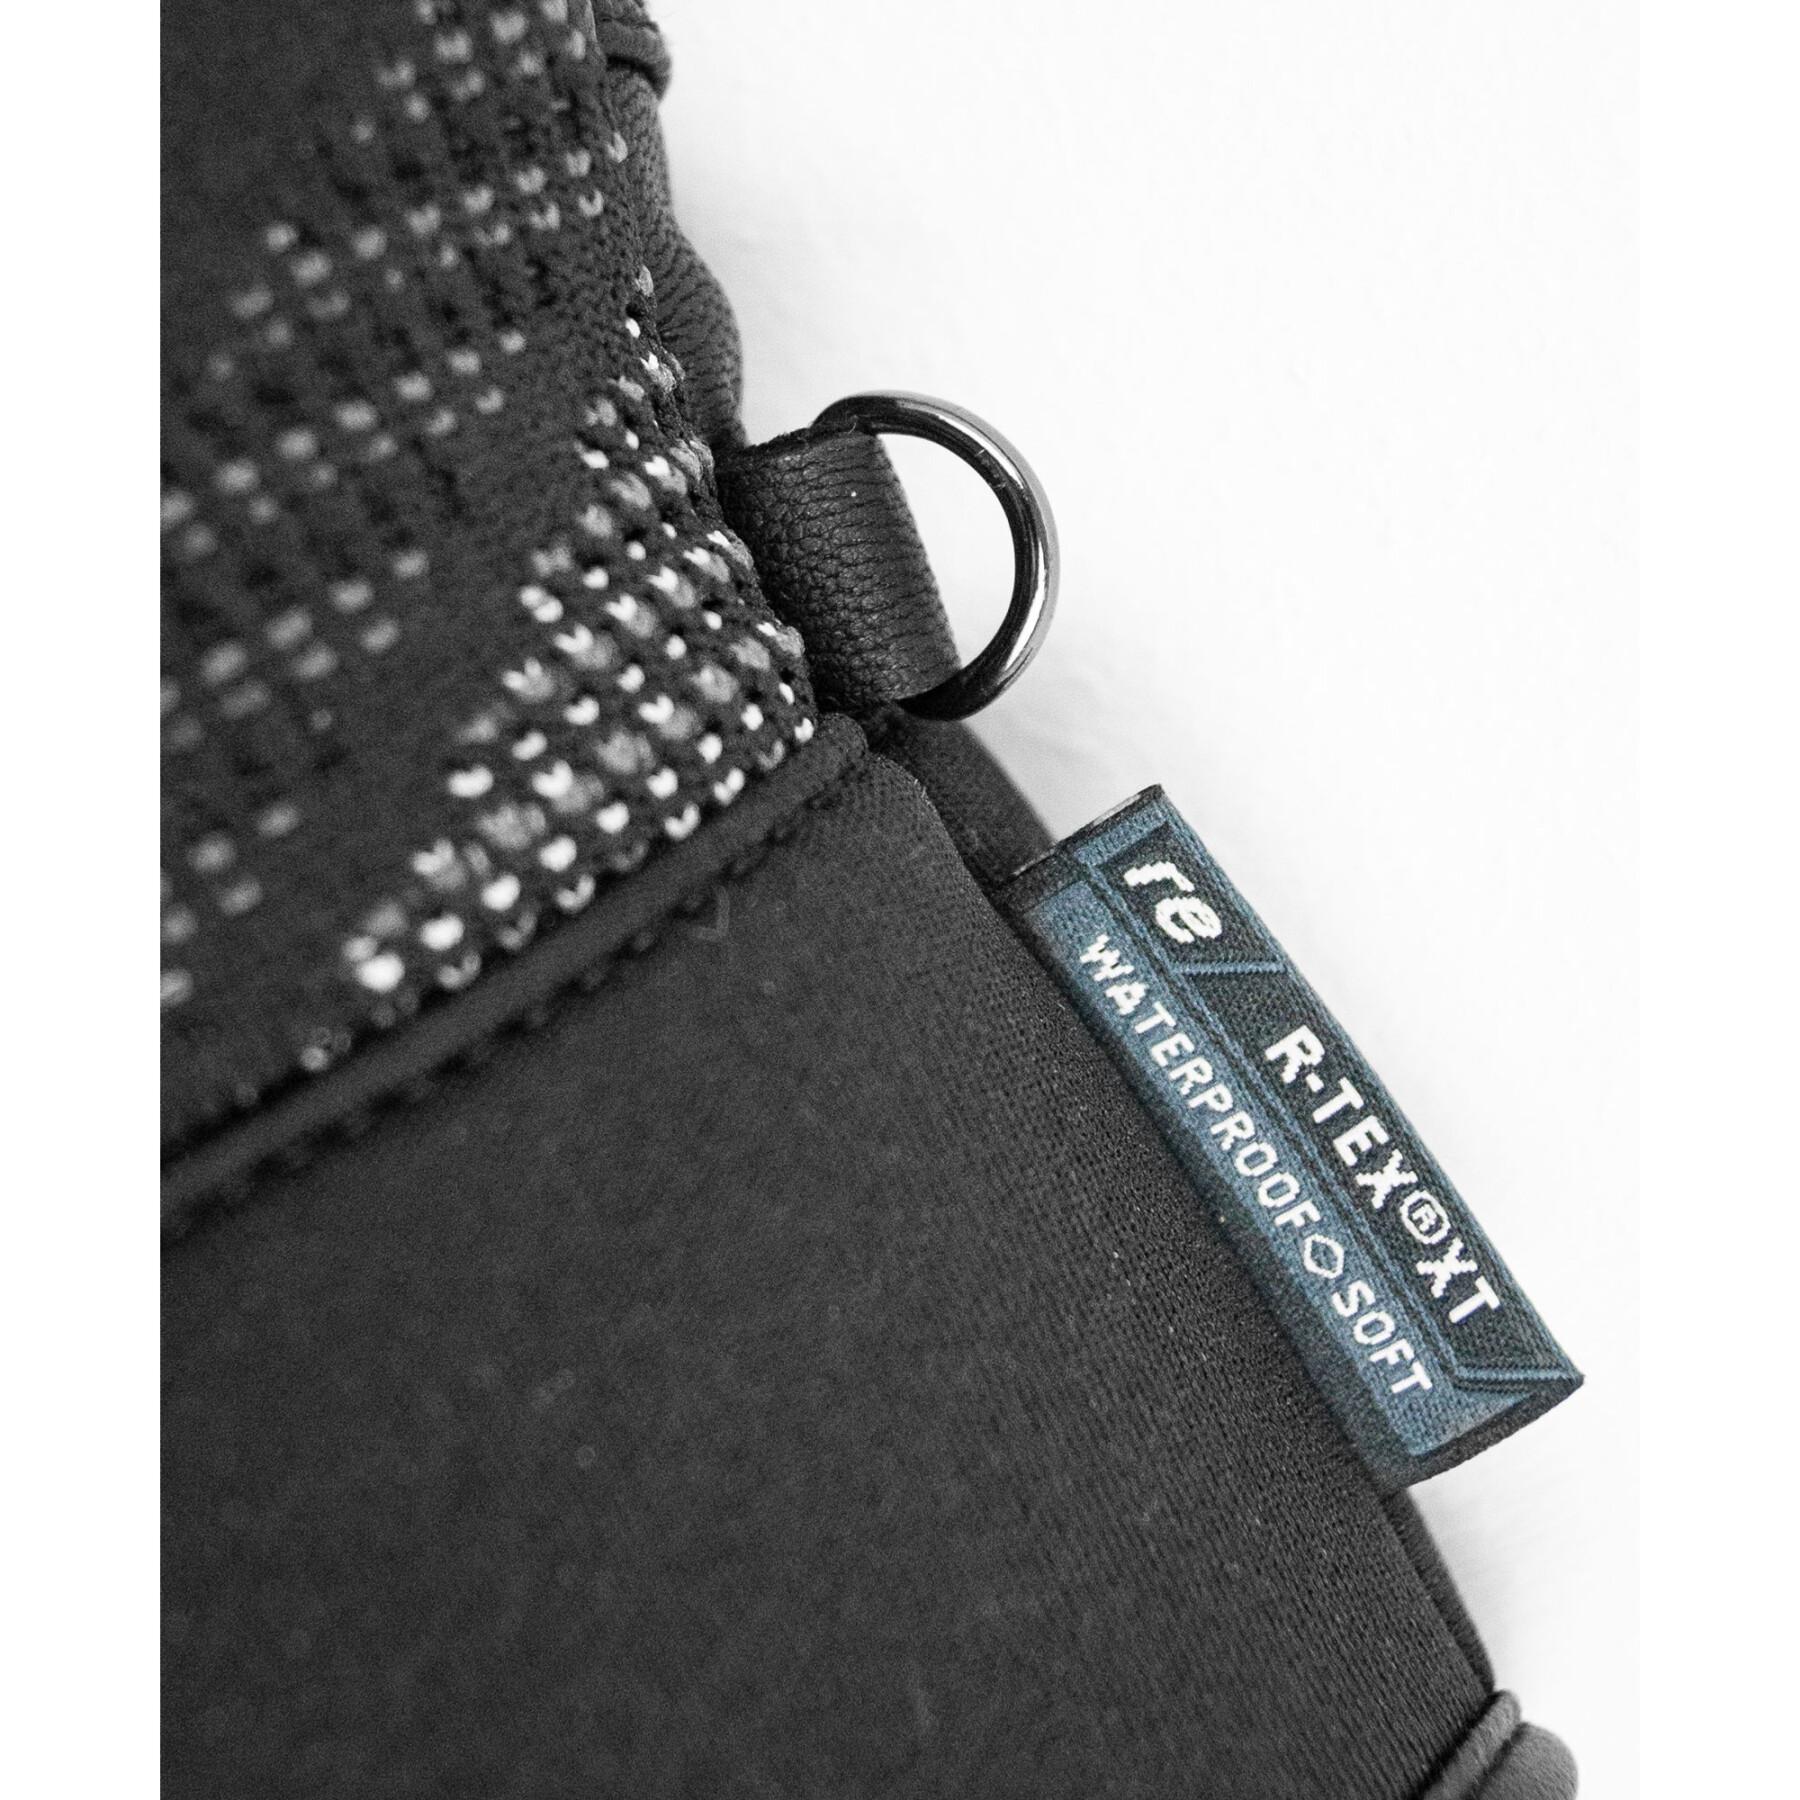 Skidhandskar Reusch Re:Knit Eclipse R-TEX® XT